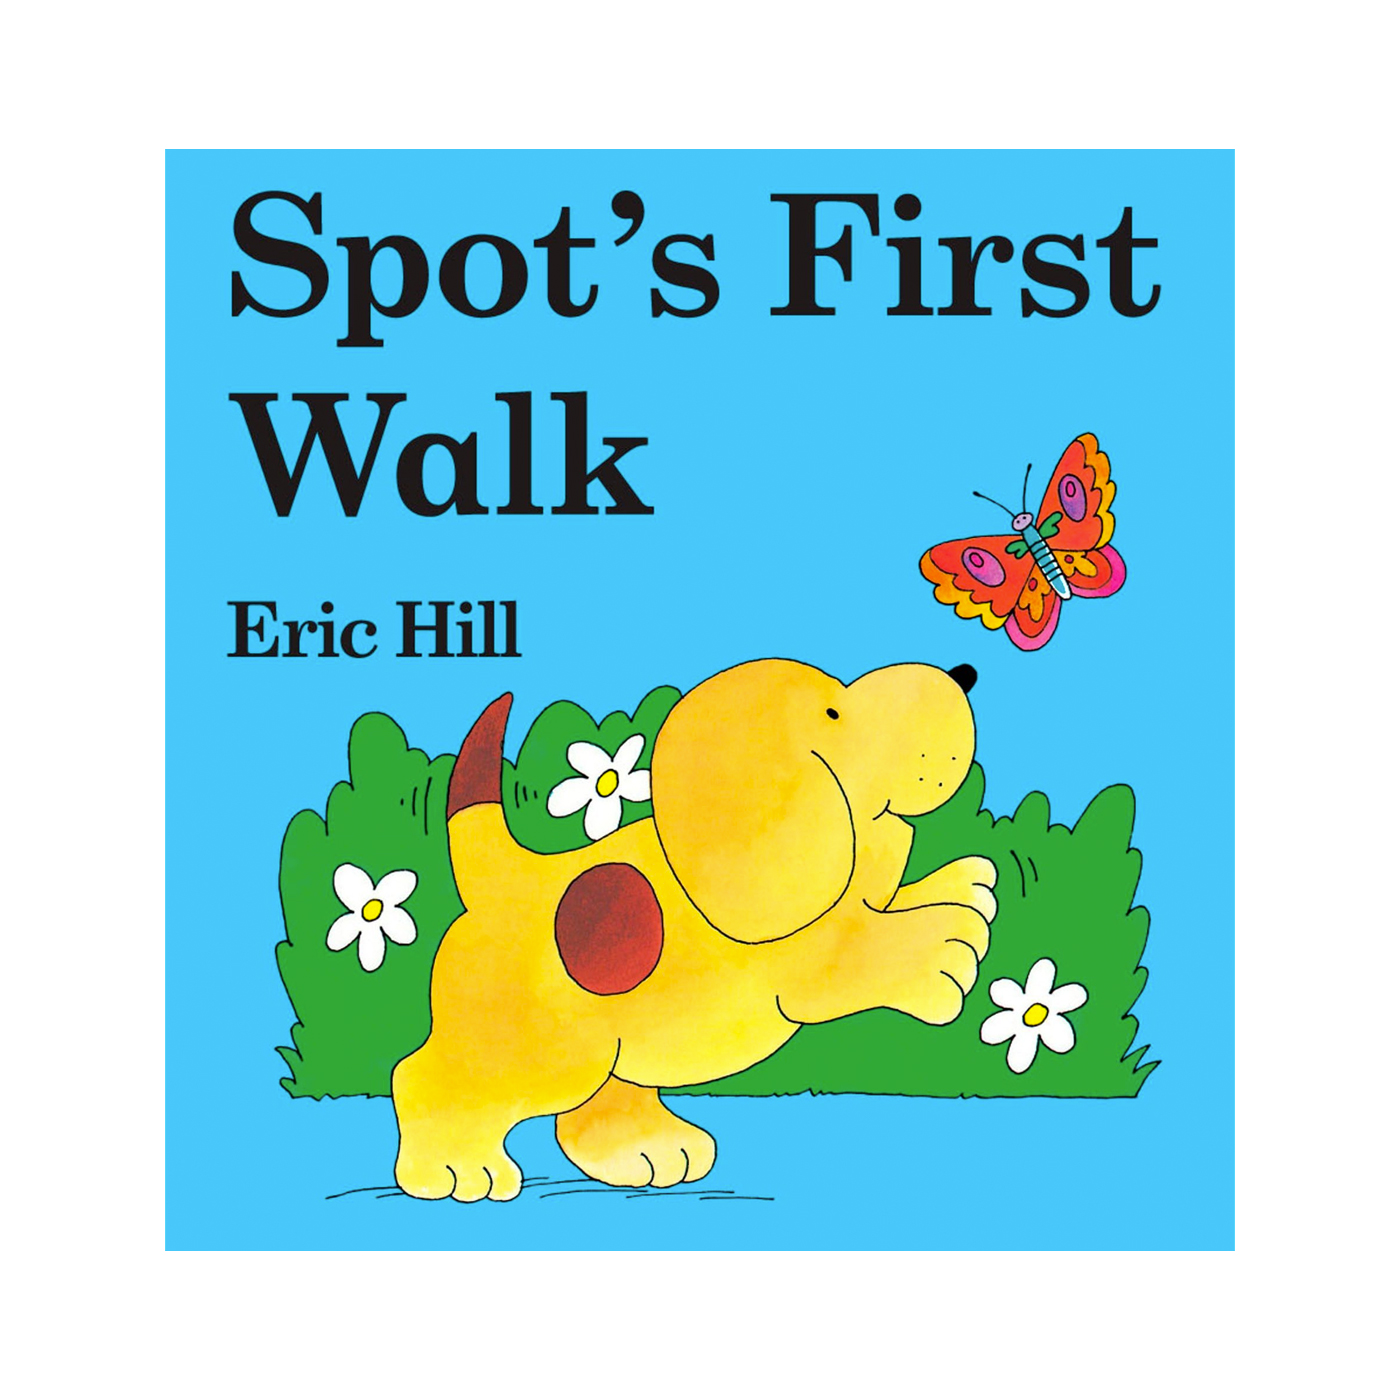  Spot's First Walk